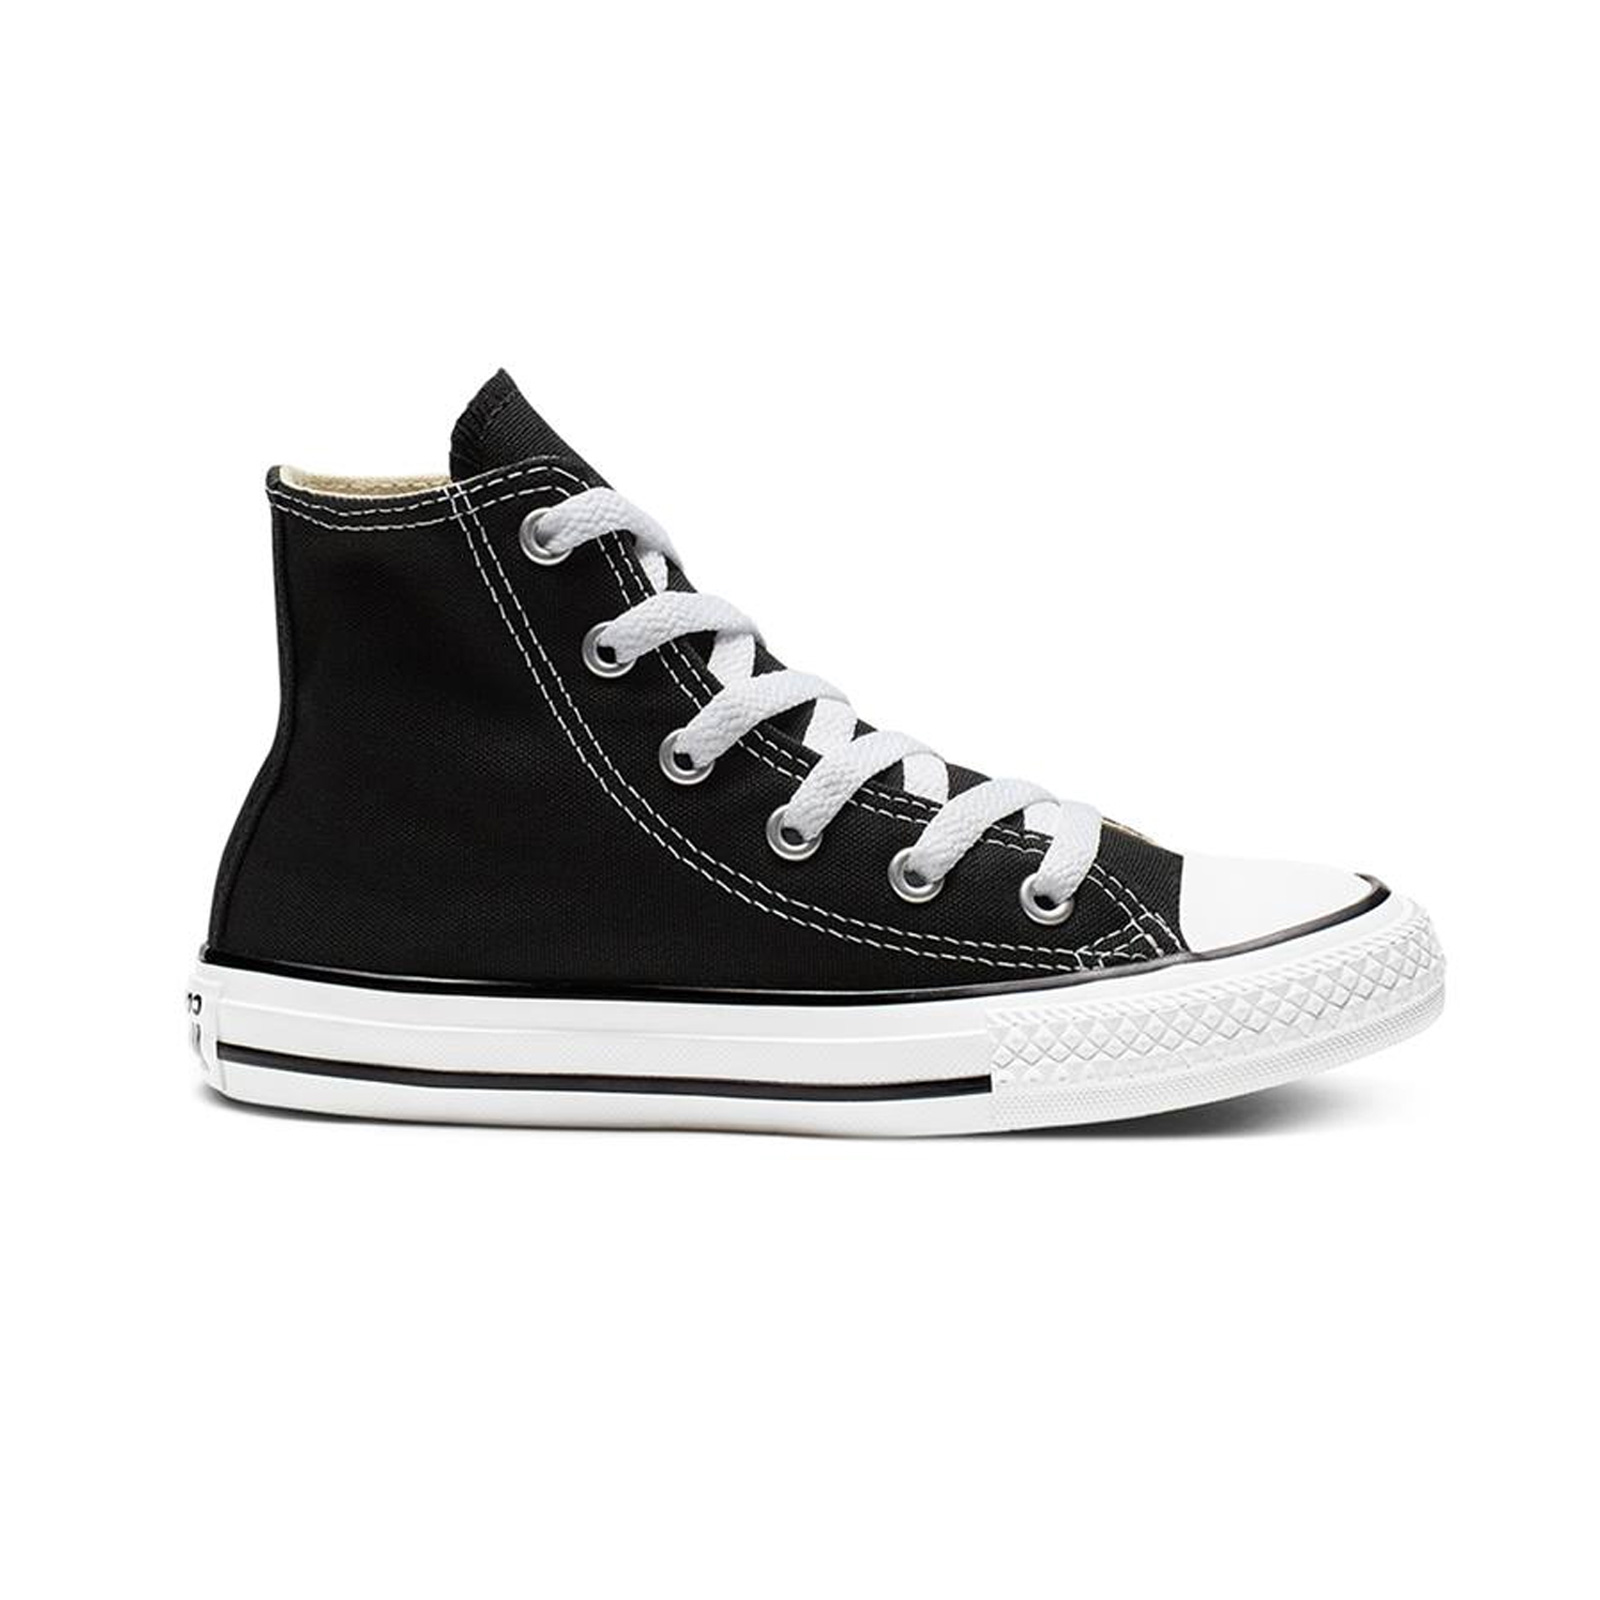 Παιδικά > Παπούτσια > Sneaker > Παπούτσι Mid Cut Converse - CHUCK TAYLOR ALL STAR - 001-BLACK